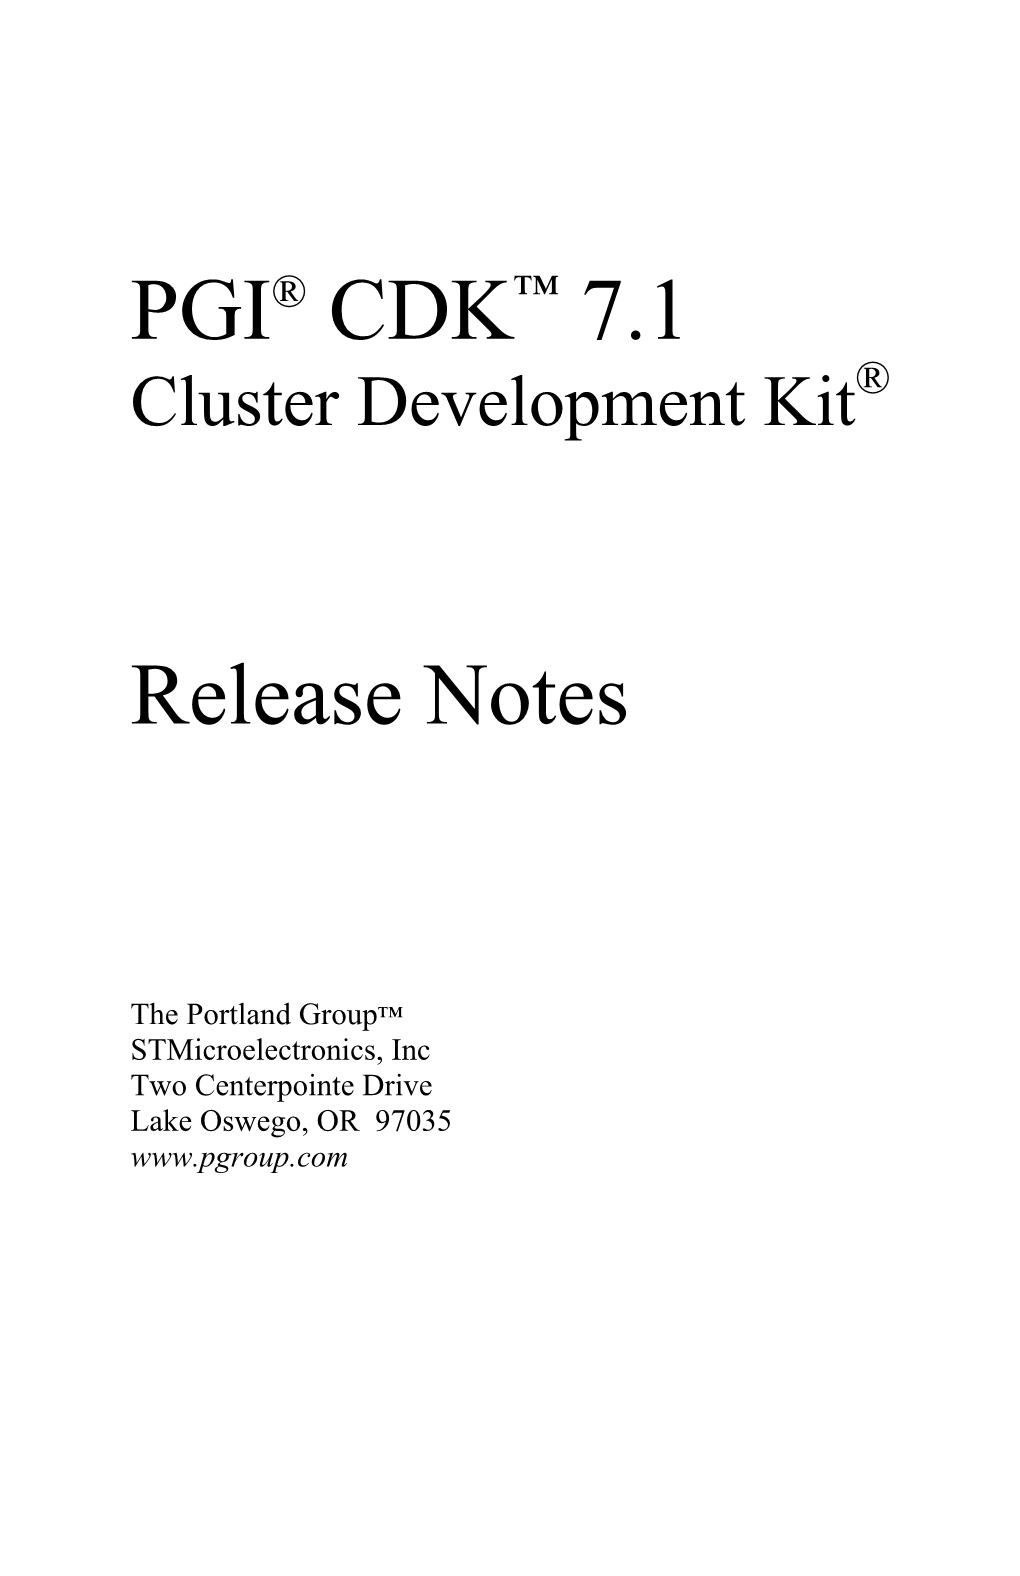 PGI Cluster Development Kit Release Notes